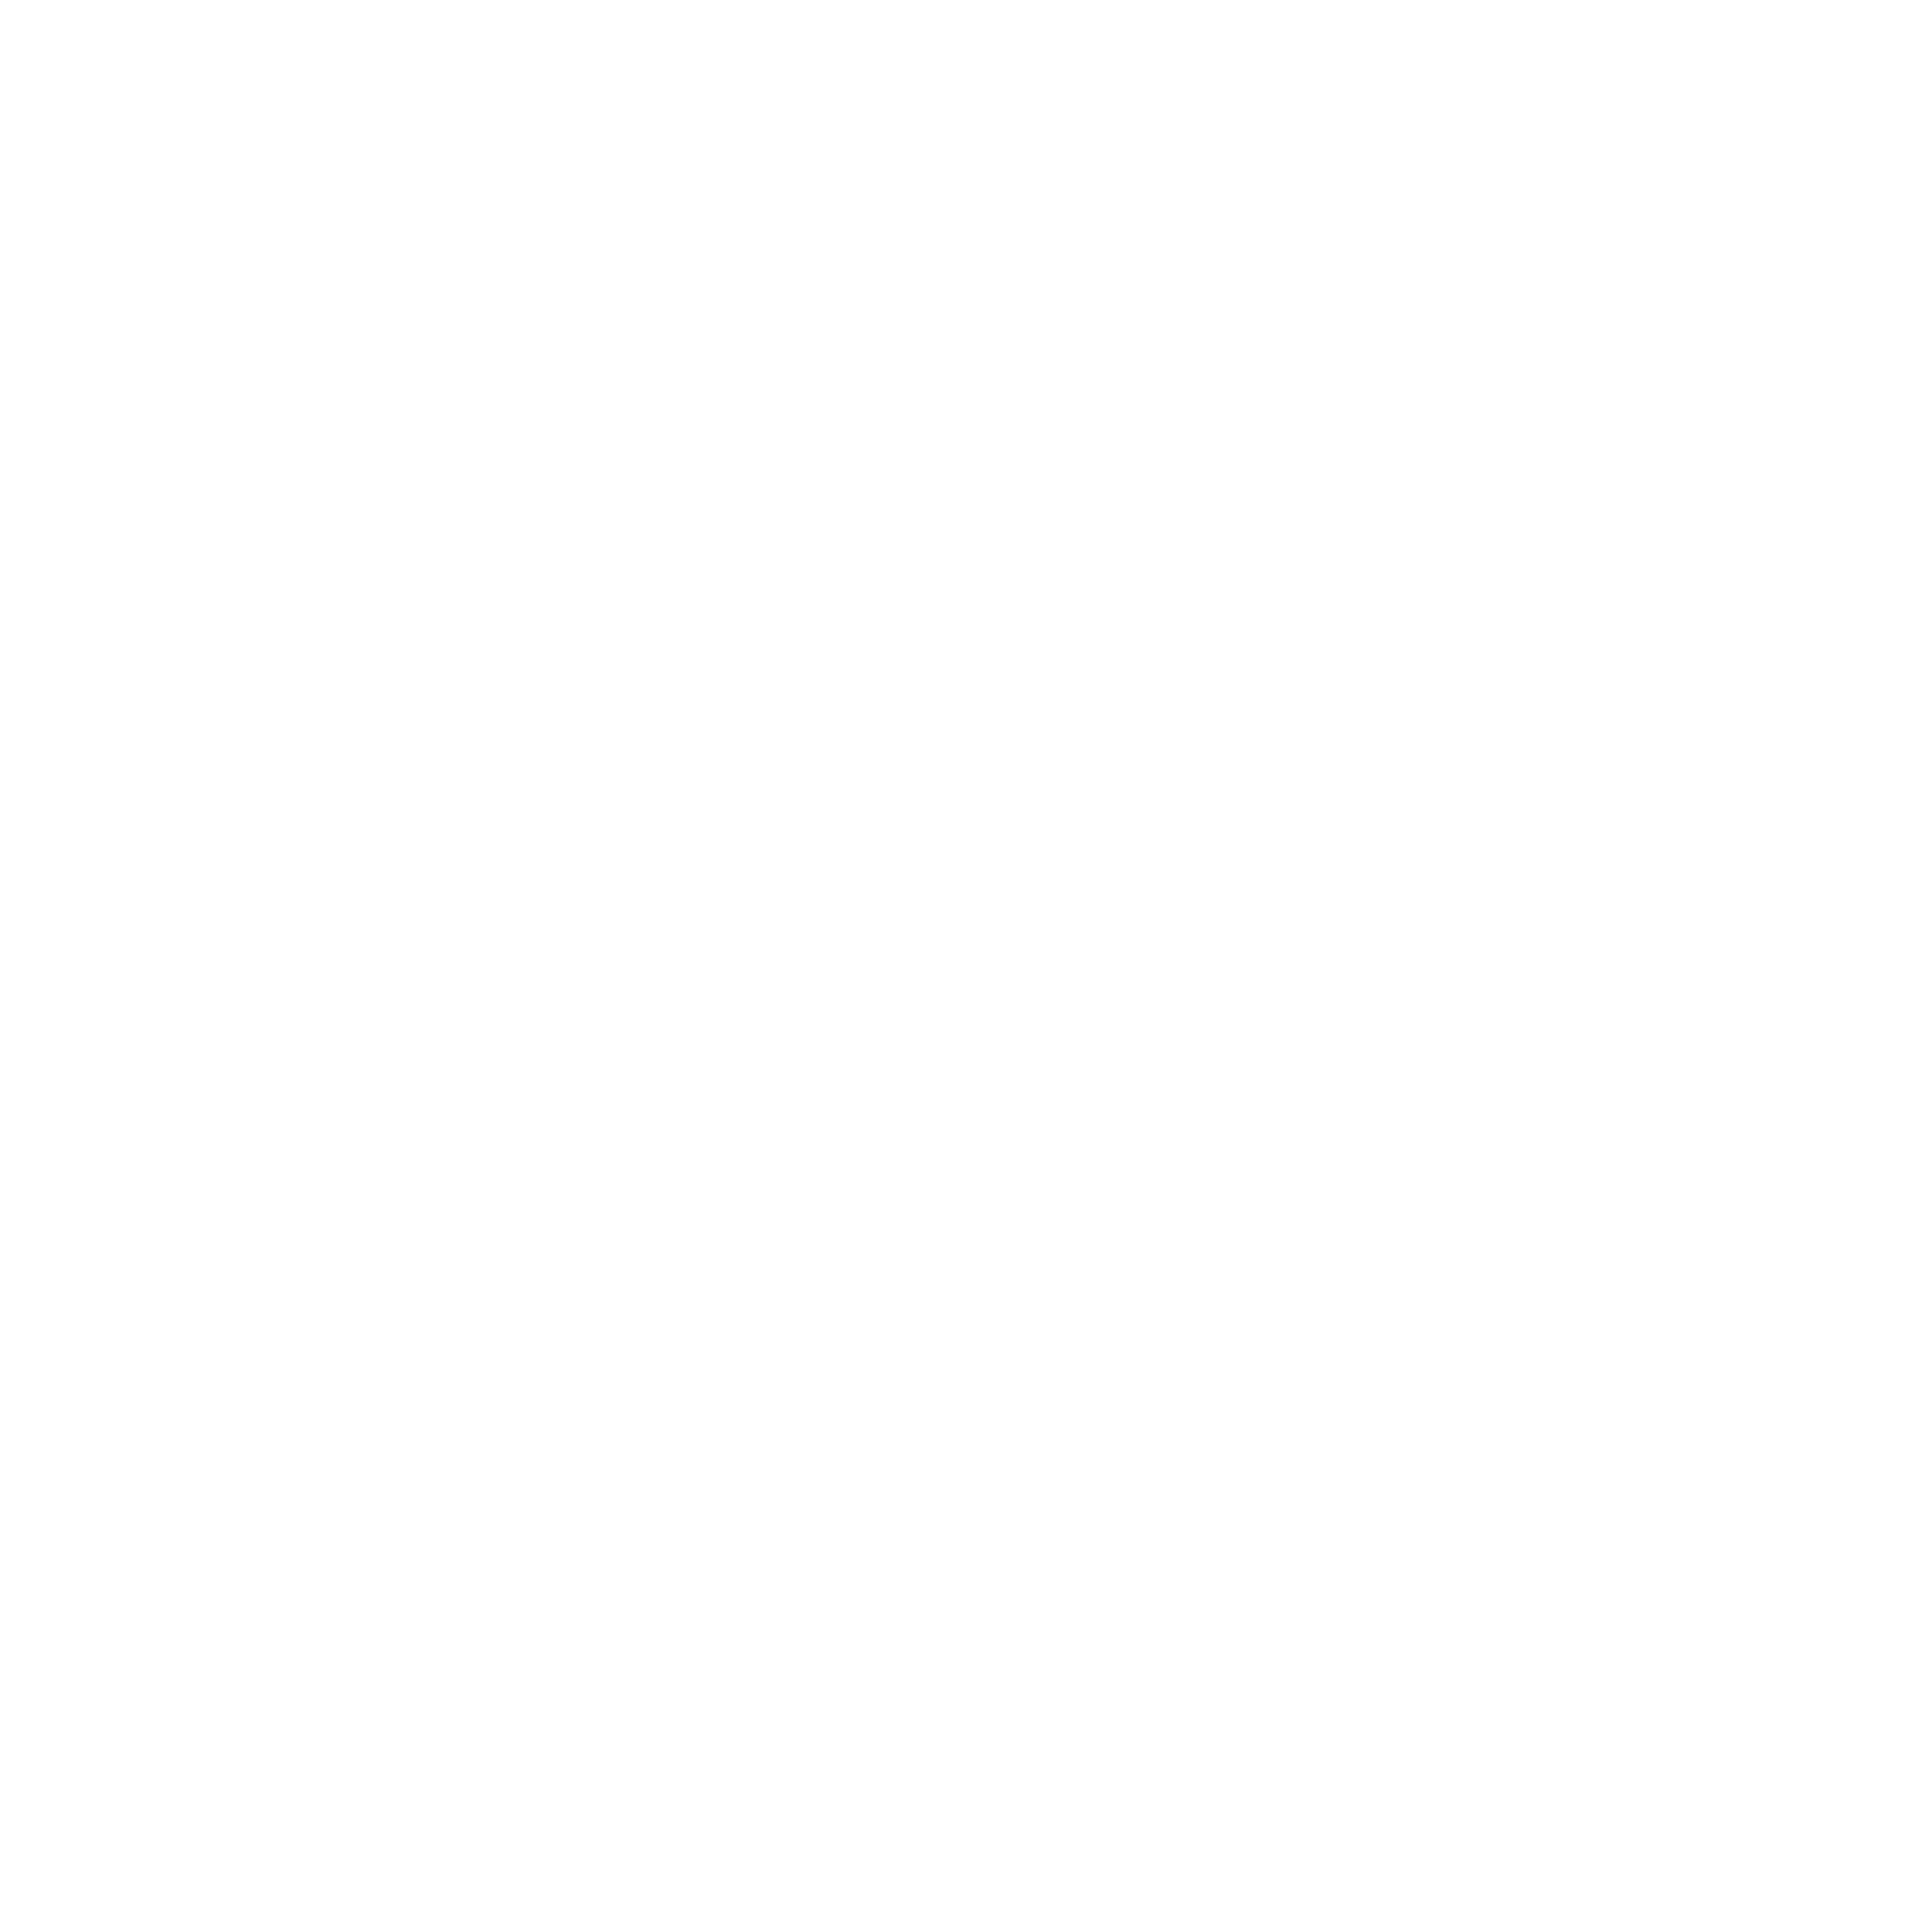 LOGO_VASA_LOKA_BINTARO_PUTIH-13